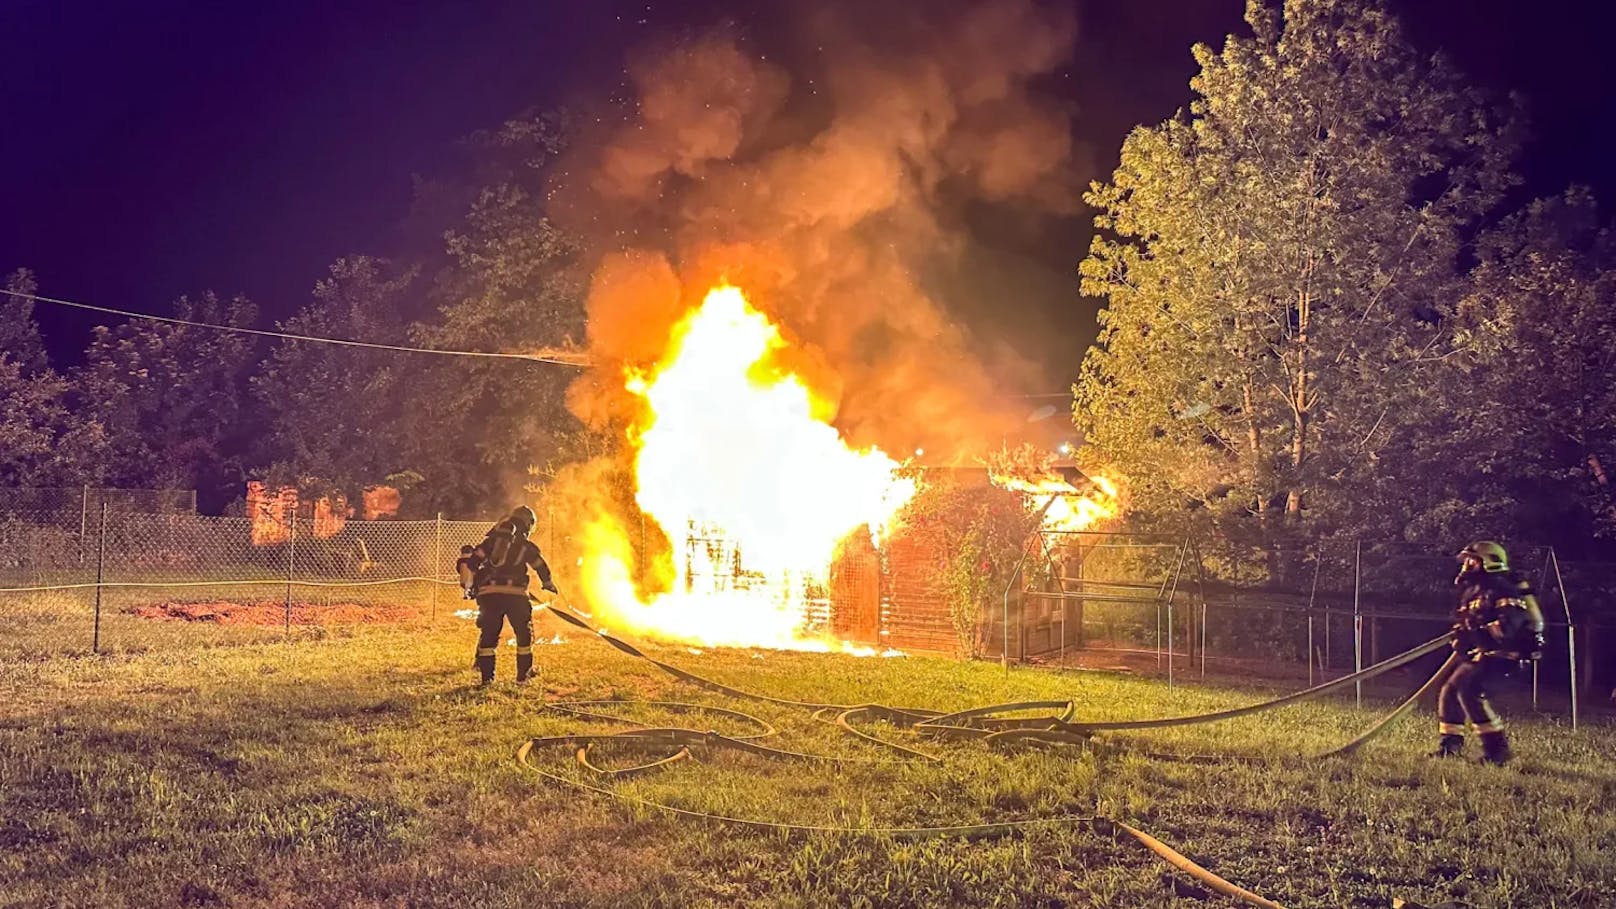 Am Montagabend gegen 22:00 Uhr wurde die Feuerwehr, Polizei und Rettung zu einem Brand einer Hütte in der Nähe des Tierheims in Steyr alarmiert.